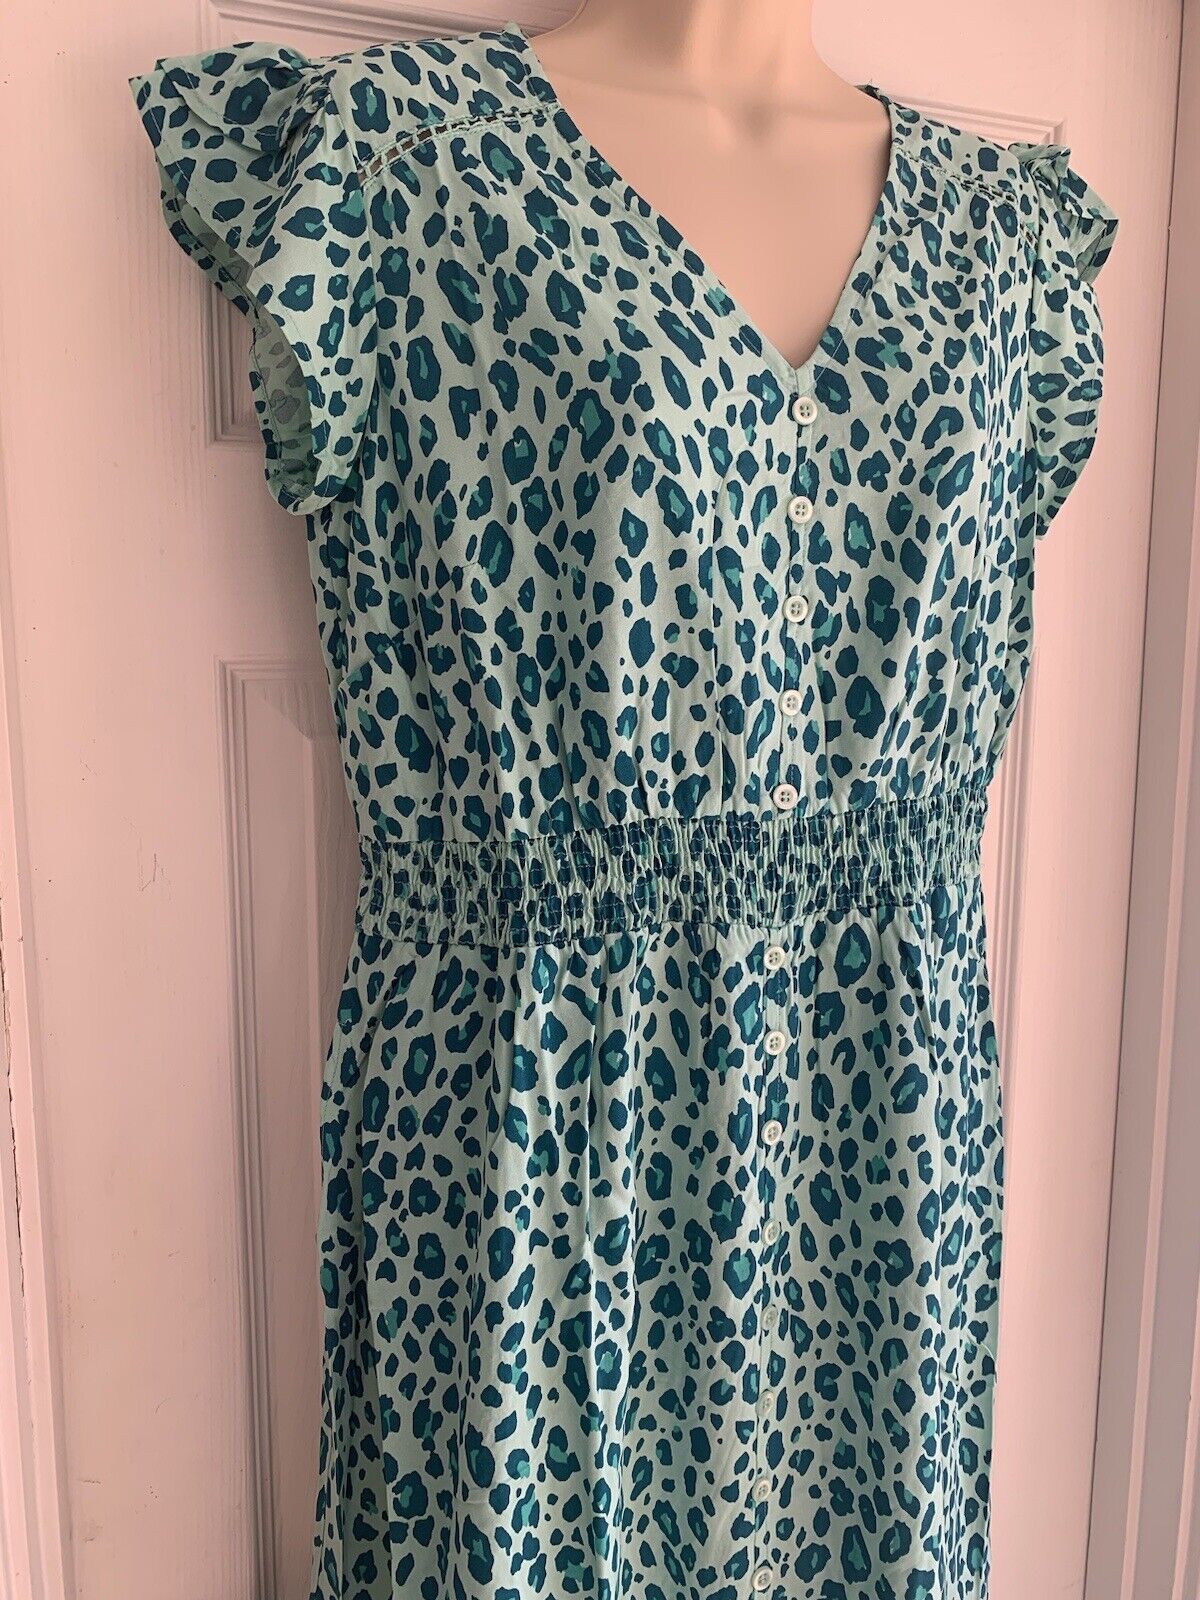 EX Joe Brown Green Leopard Print Lace Maxi Dress 14 16 18 20 22 24 26 28 RRP £65